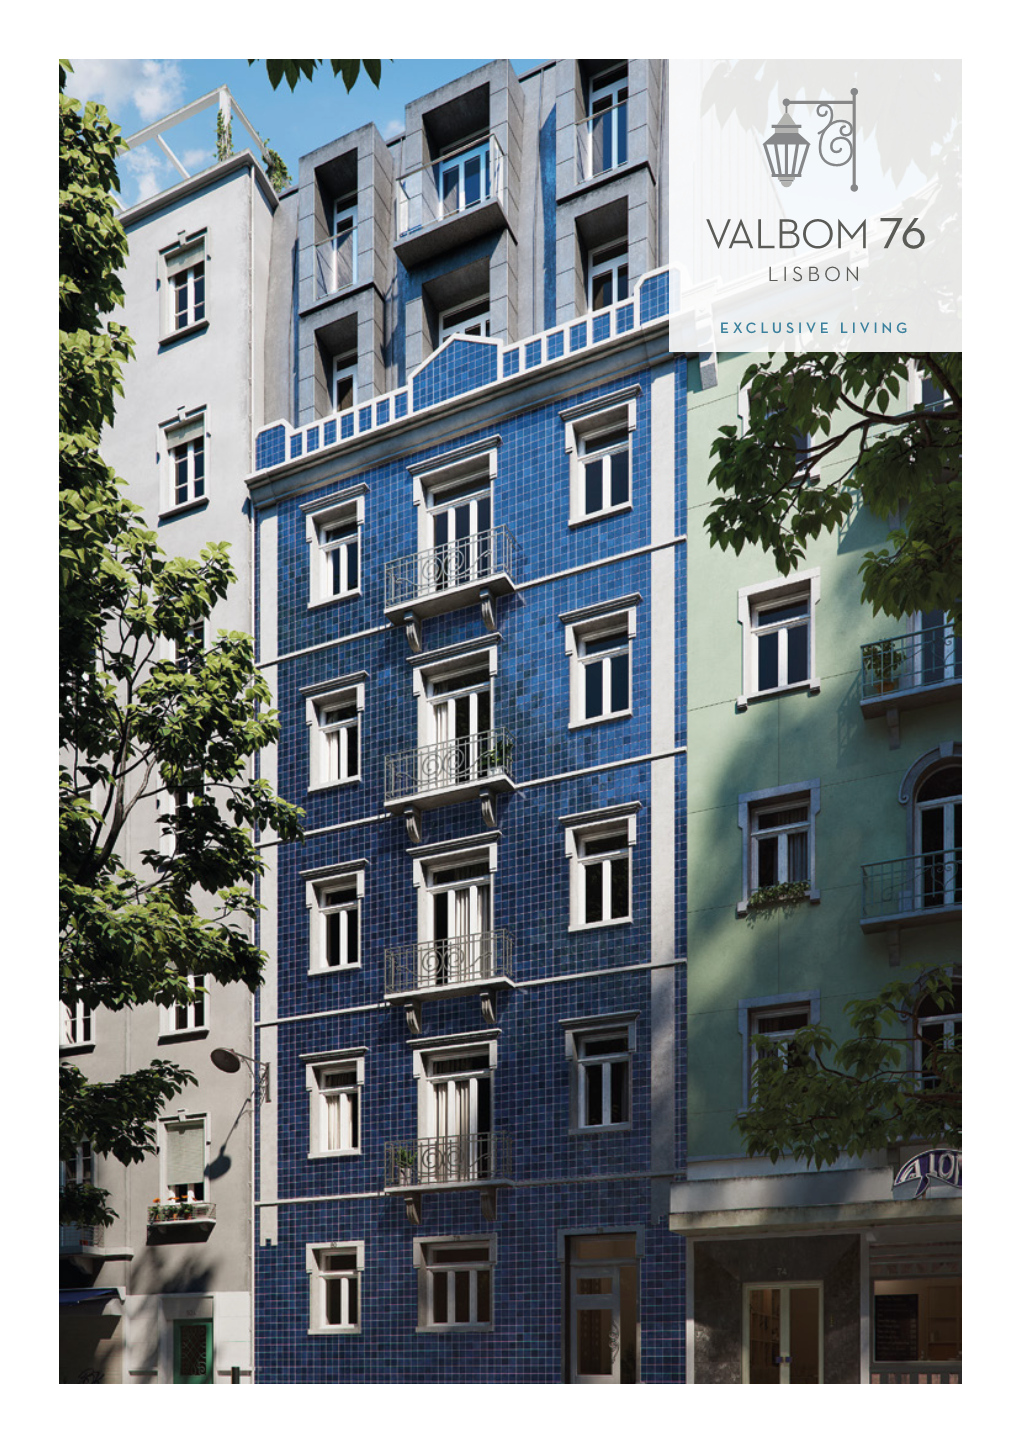 Valbom 76 Lisbon